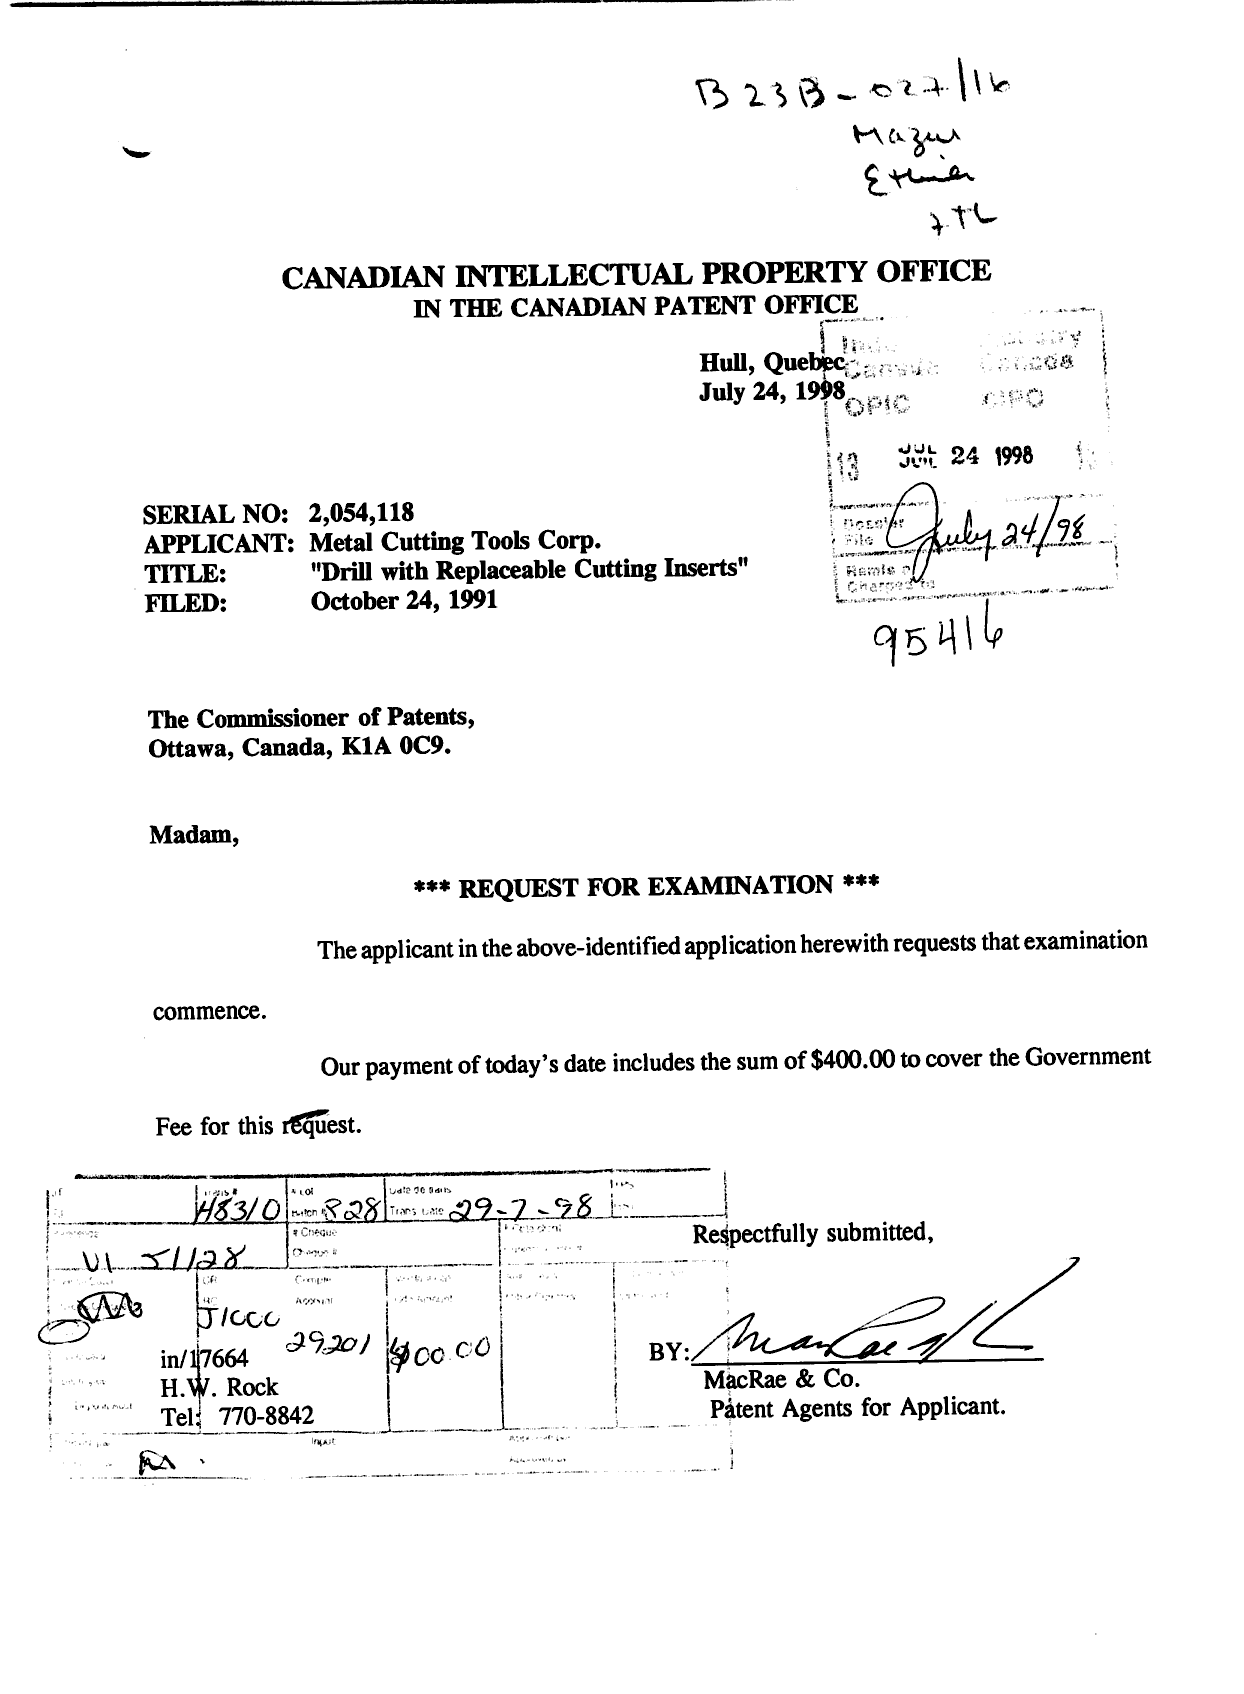 Document de brevet canadien 2054118. Poursuite-Amendment 19980724. Image 1 de 1